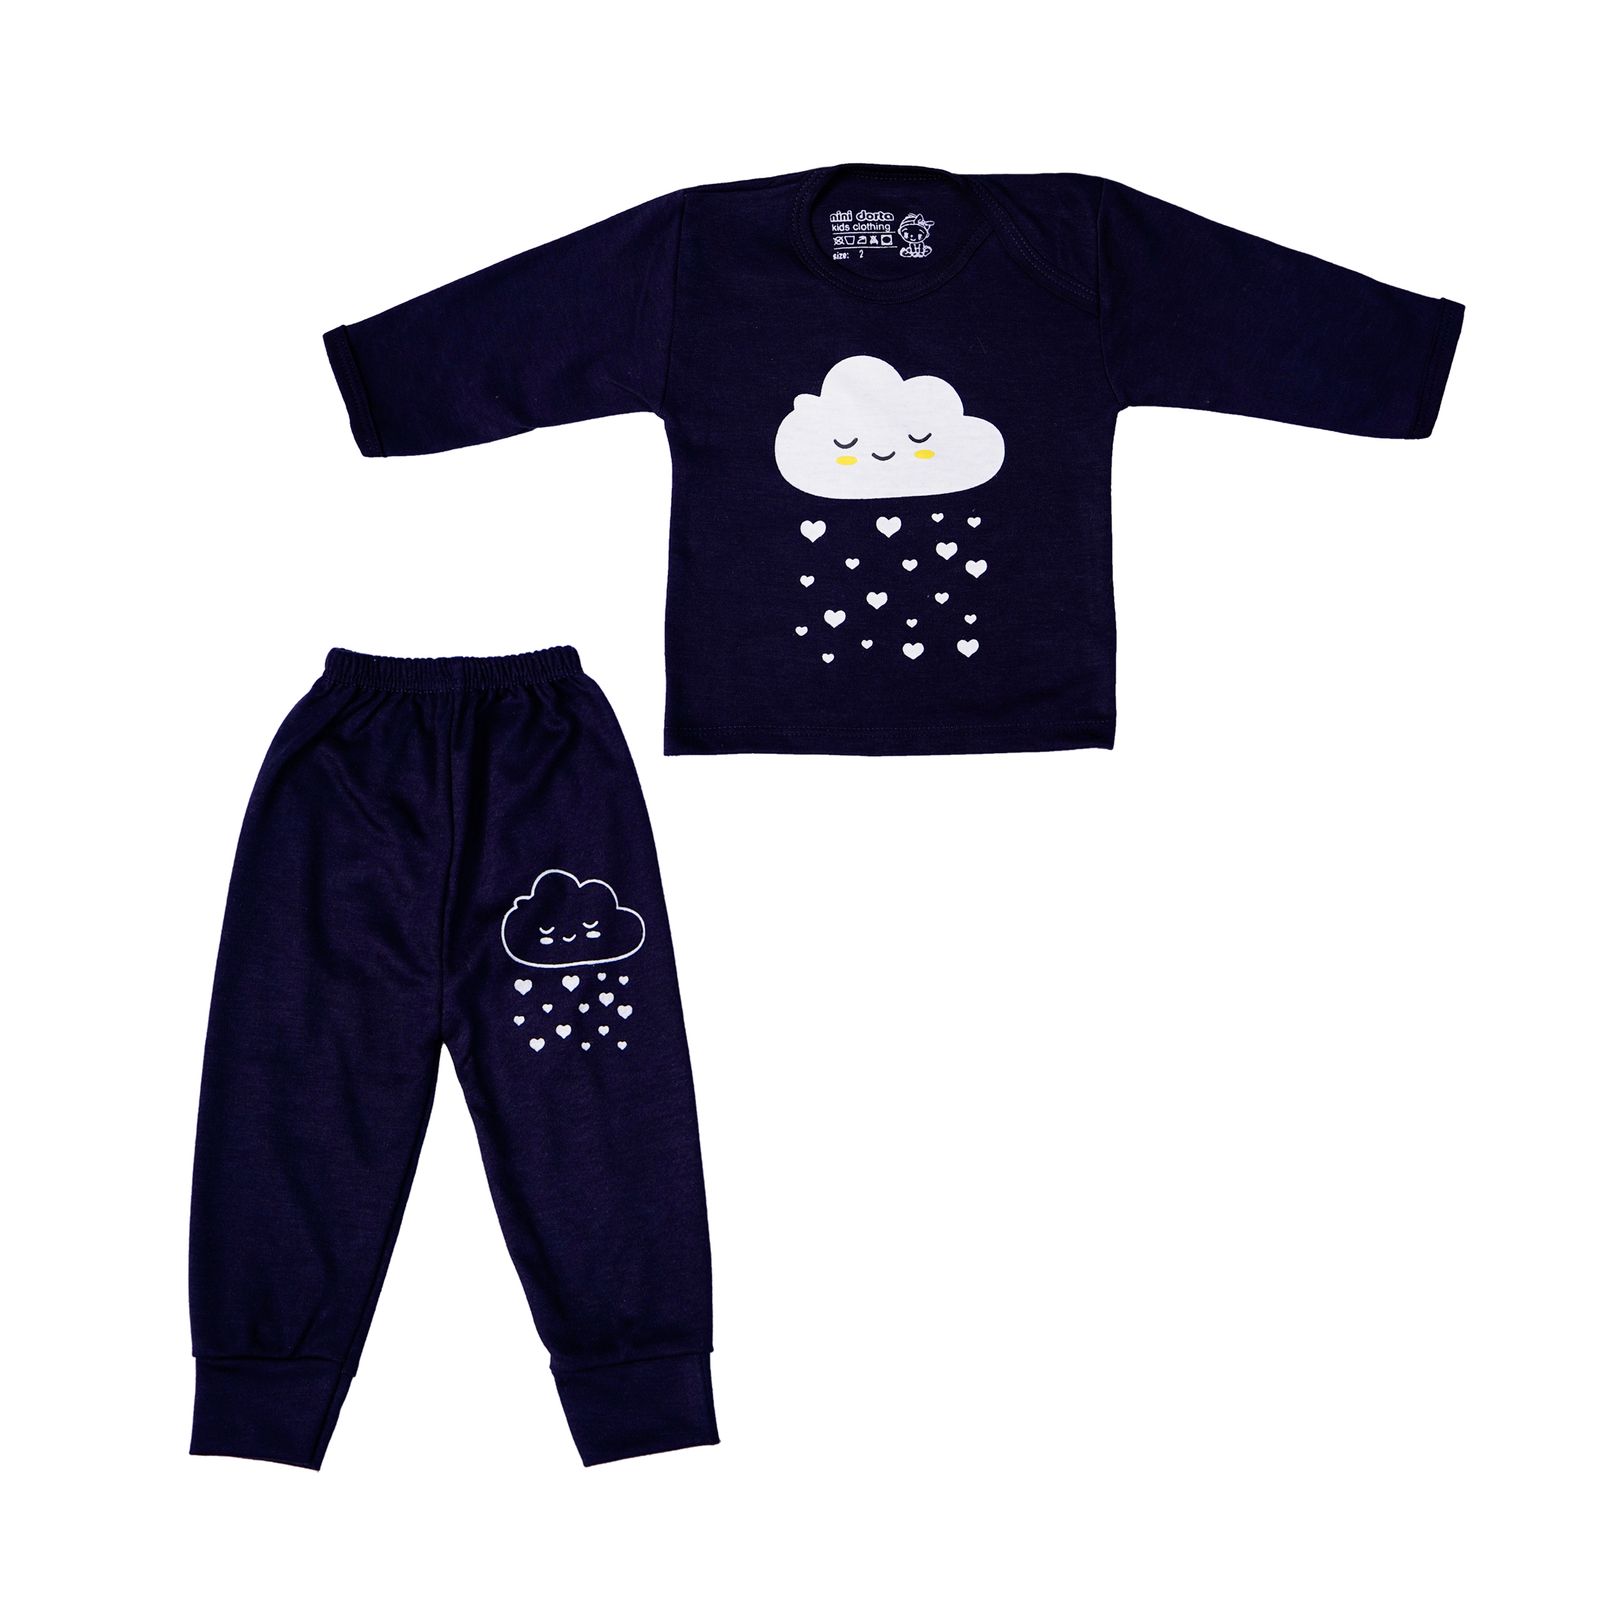 ست تی شرت و شلوار نوزادی مدل ابر بارانی کد 5 رنگ سرمه ای -  - 2